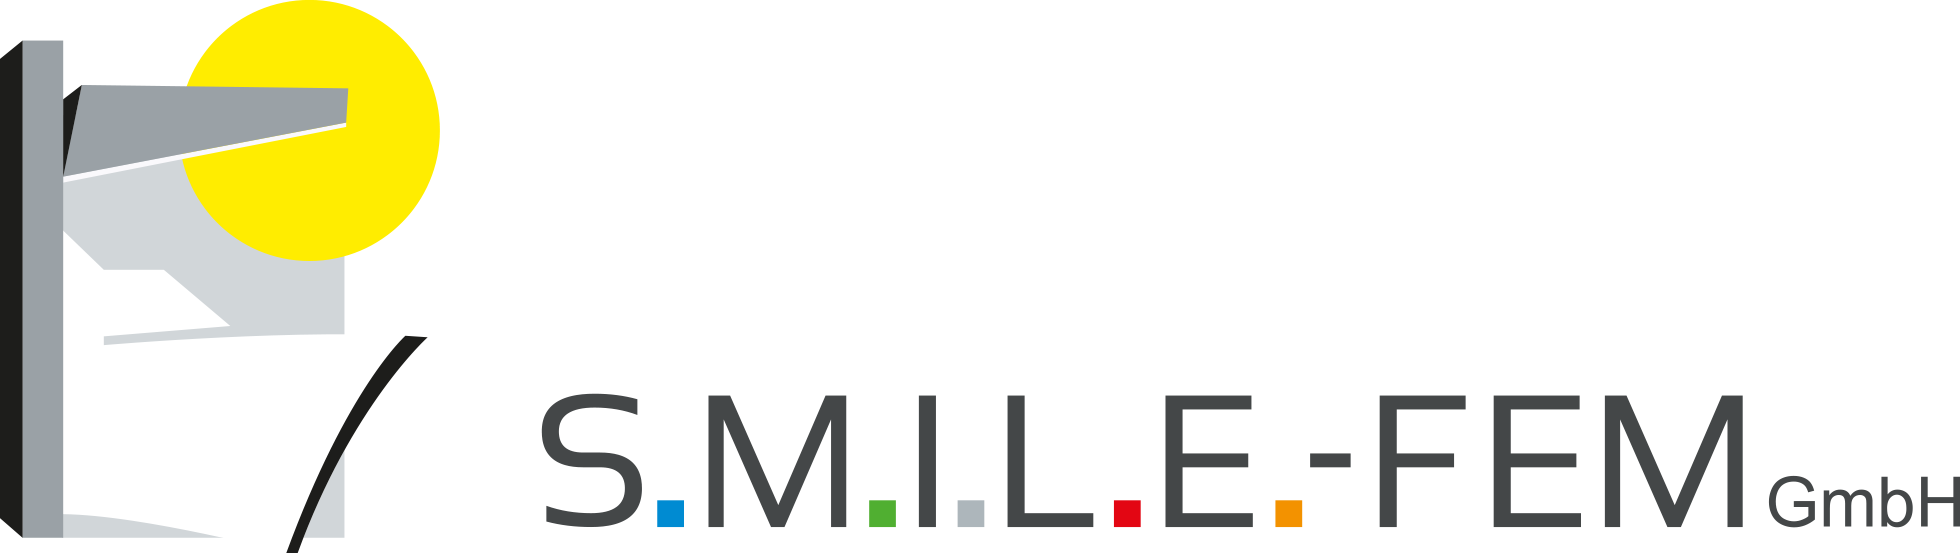 S.M.I.L.E.-FEM GmbH logo